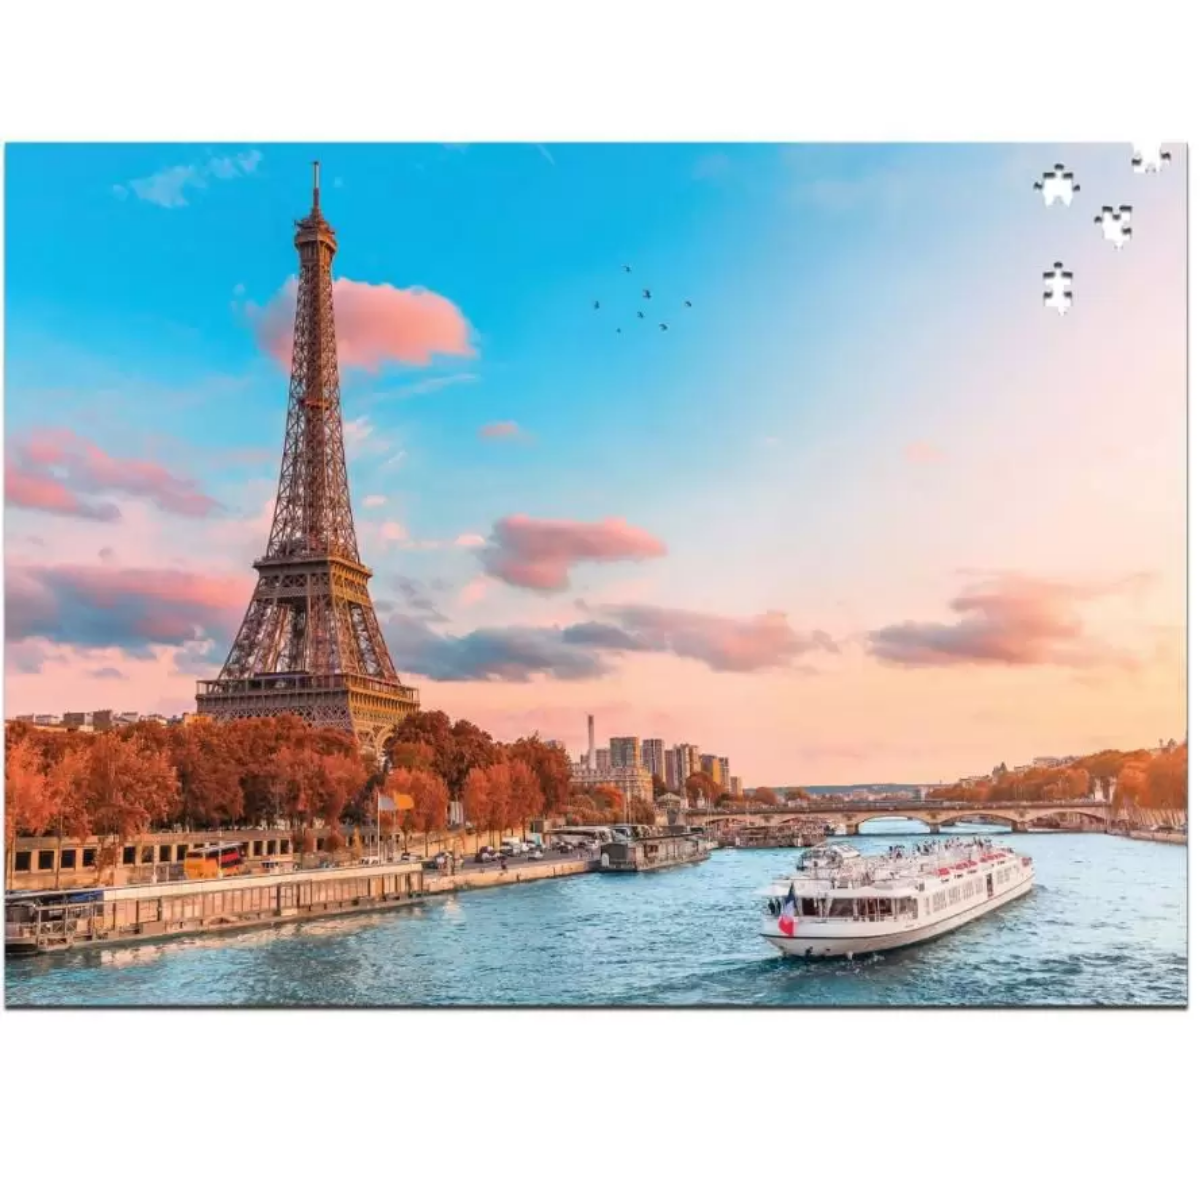 Quebra Cabeça de 1000 peças brinquedo cartonado Torre Eiffel Paris 63cm x 45,5cmm - 2